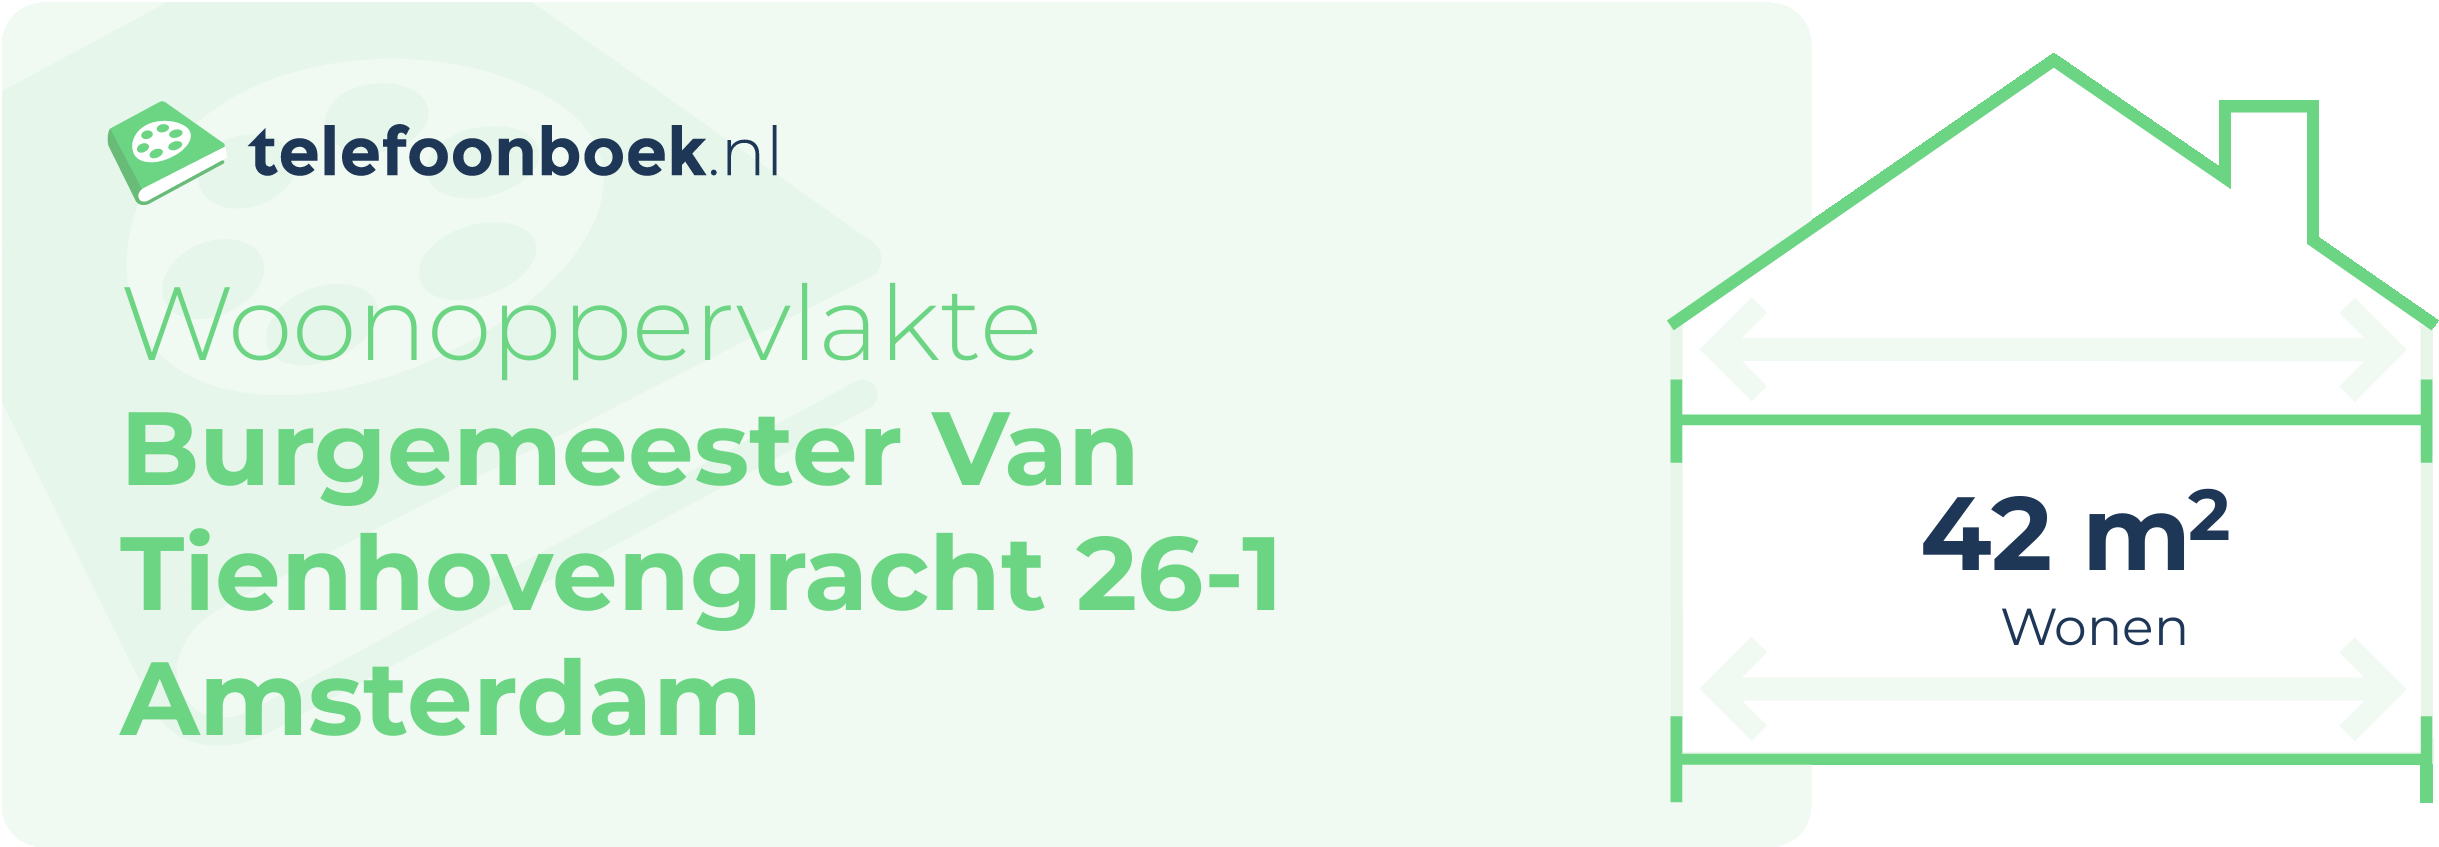 Woonoppervlakte Burgemeester Van Tienhovengracht 26-1 Amsterdam